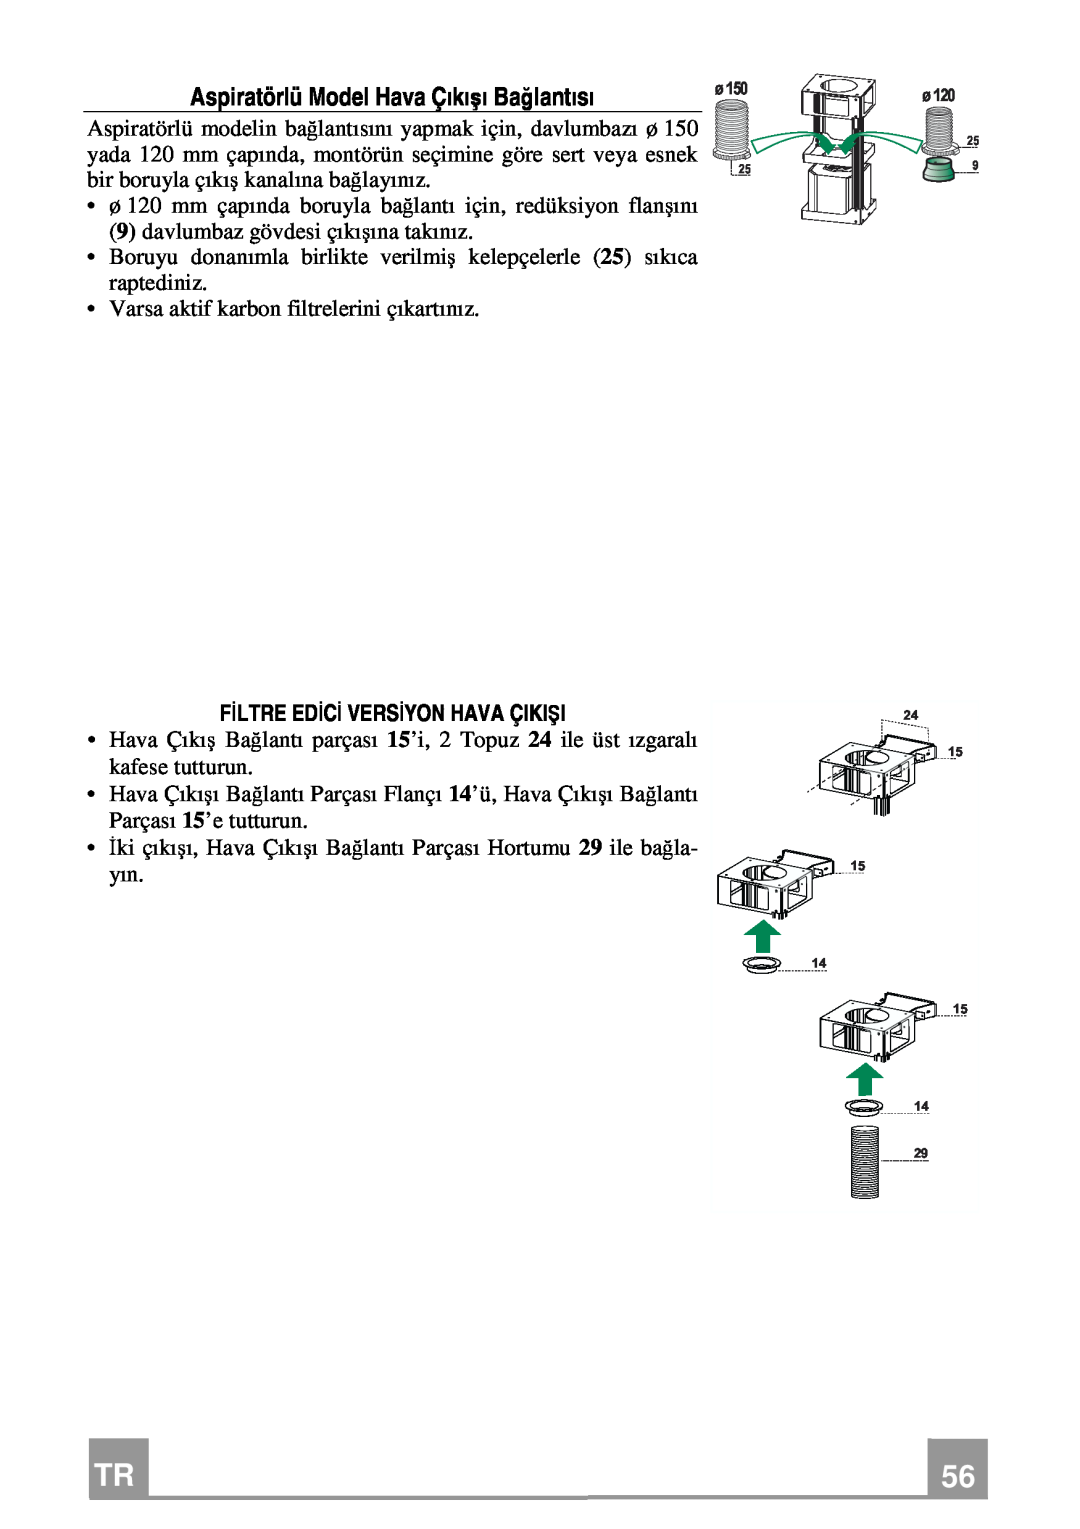 Franke Consumer Products FDMO 607 I manual Aspiratörlü Model Hava Çıkışı Bağlantısı, Filtre Edici Versiyon Hava Çikişi 